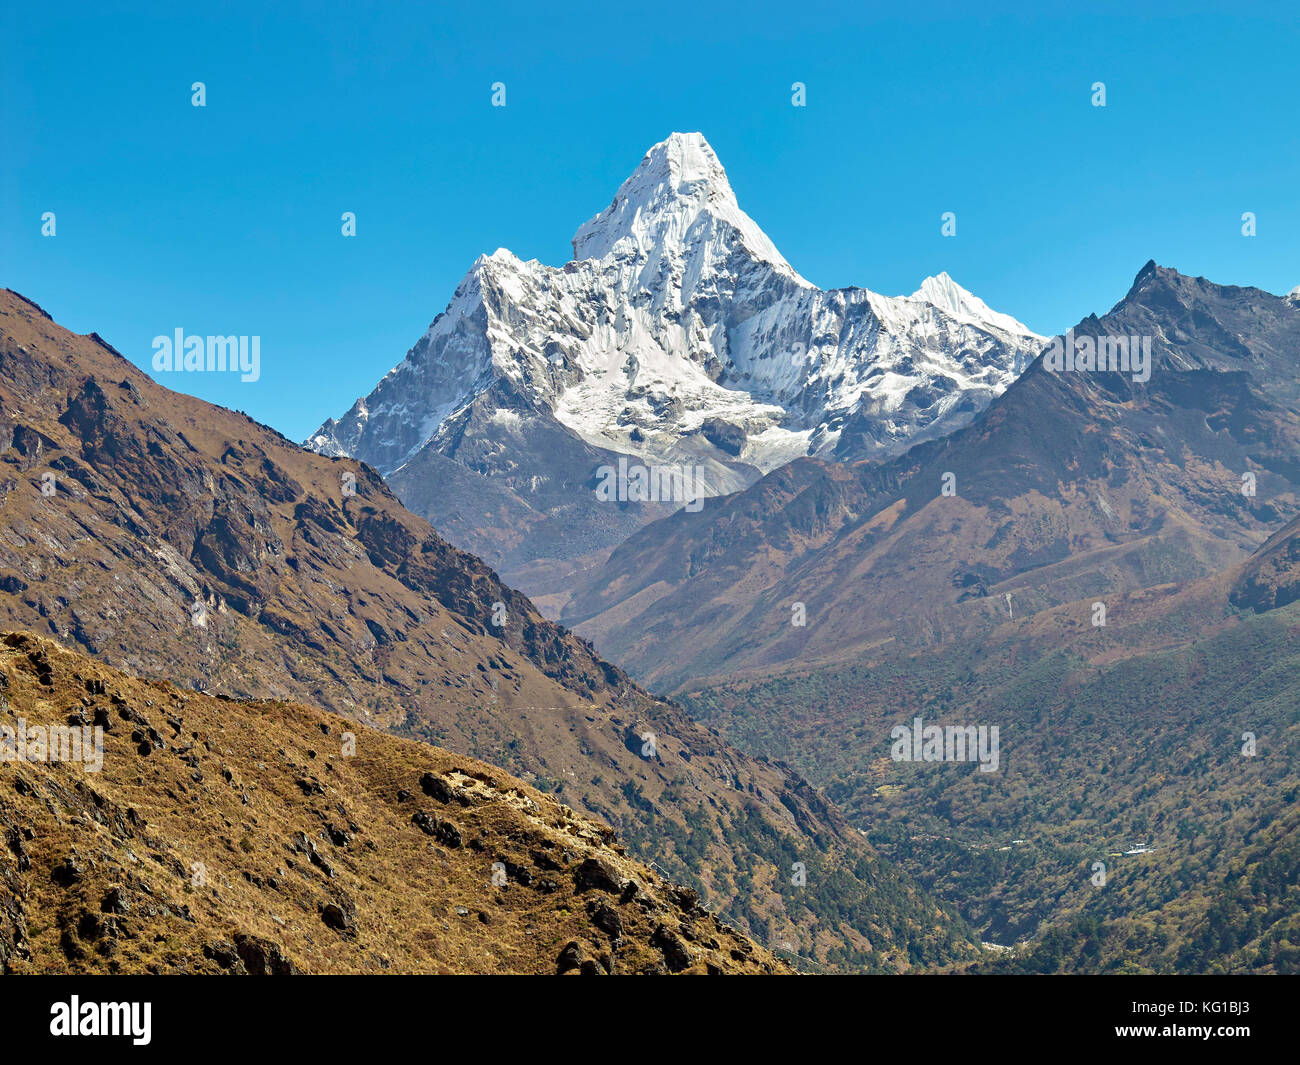 El ama dablam montaña. el pico principal es de 6812 metros, el Everest región del Himalaya, Nepal. Foto de stock